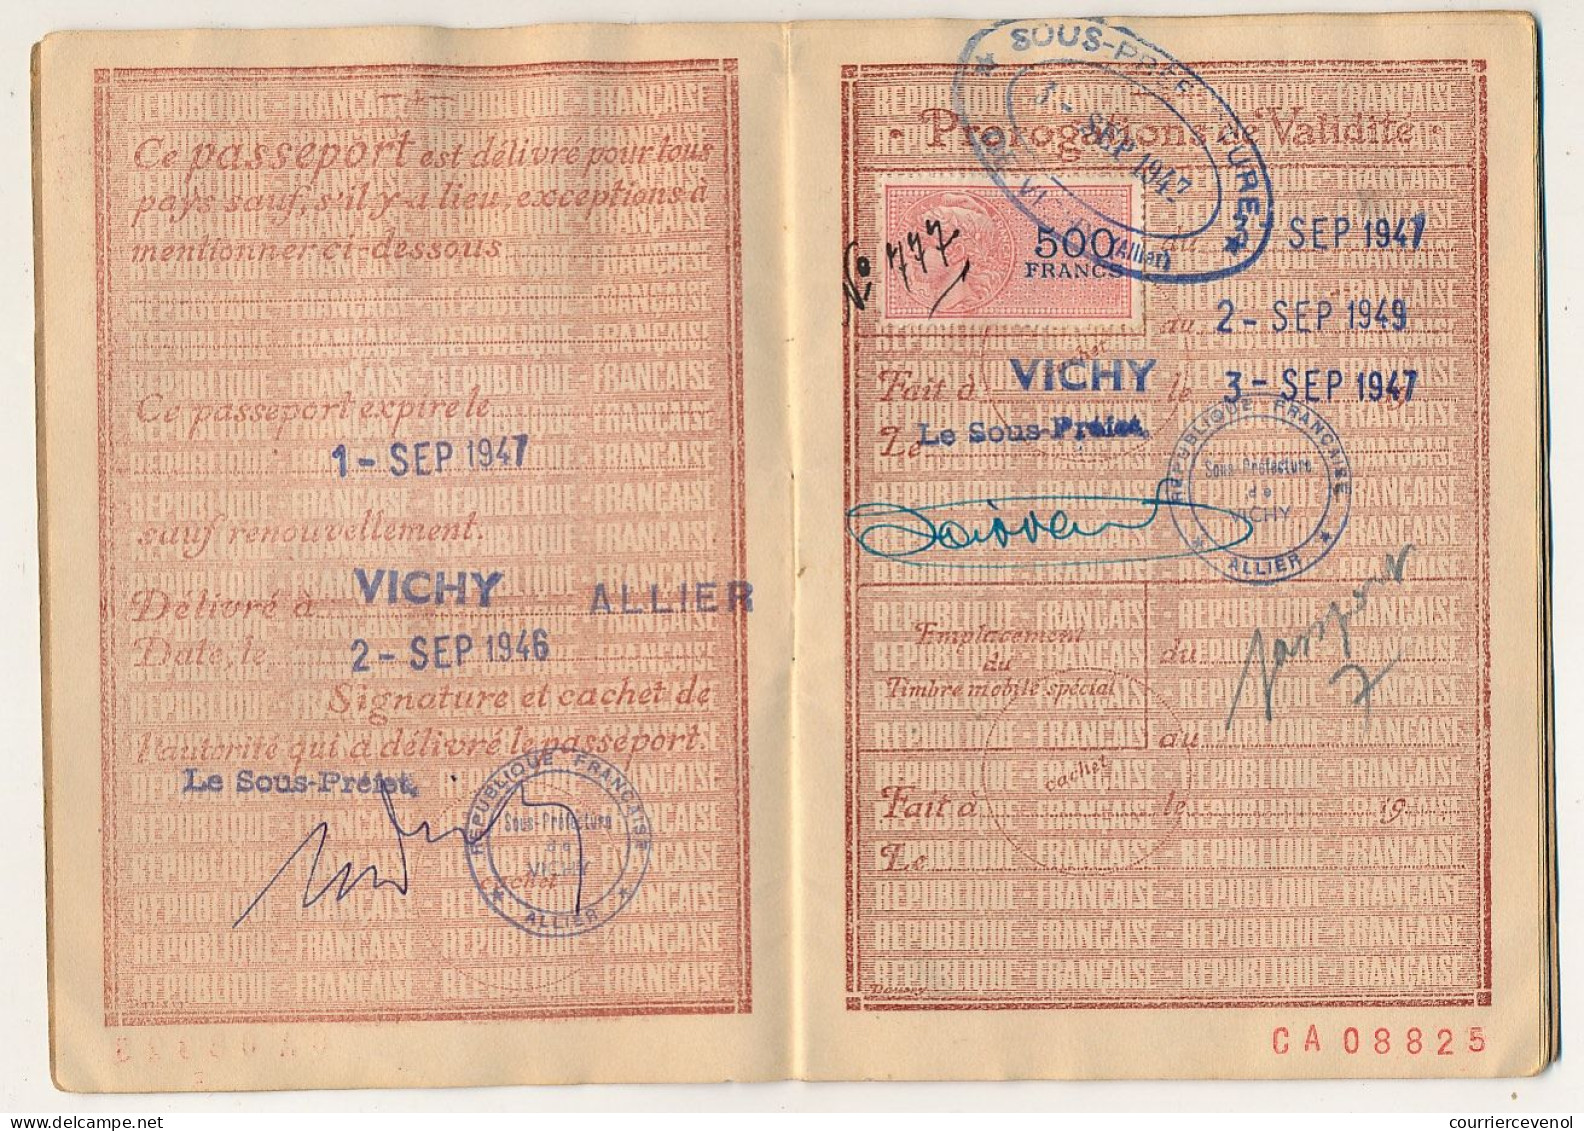 FRANCE - Passeport à l'étranger 60F Vichy (Allier) 1946 + 500f (sans légende) pour renouvellement + visa suisse